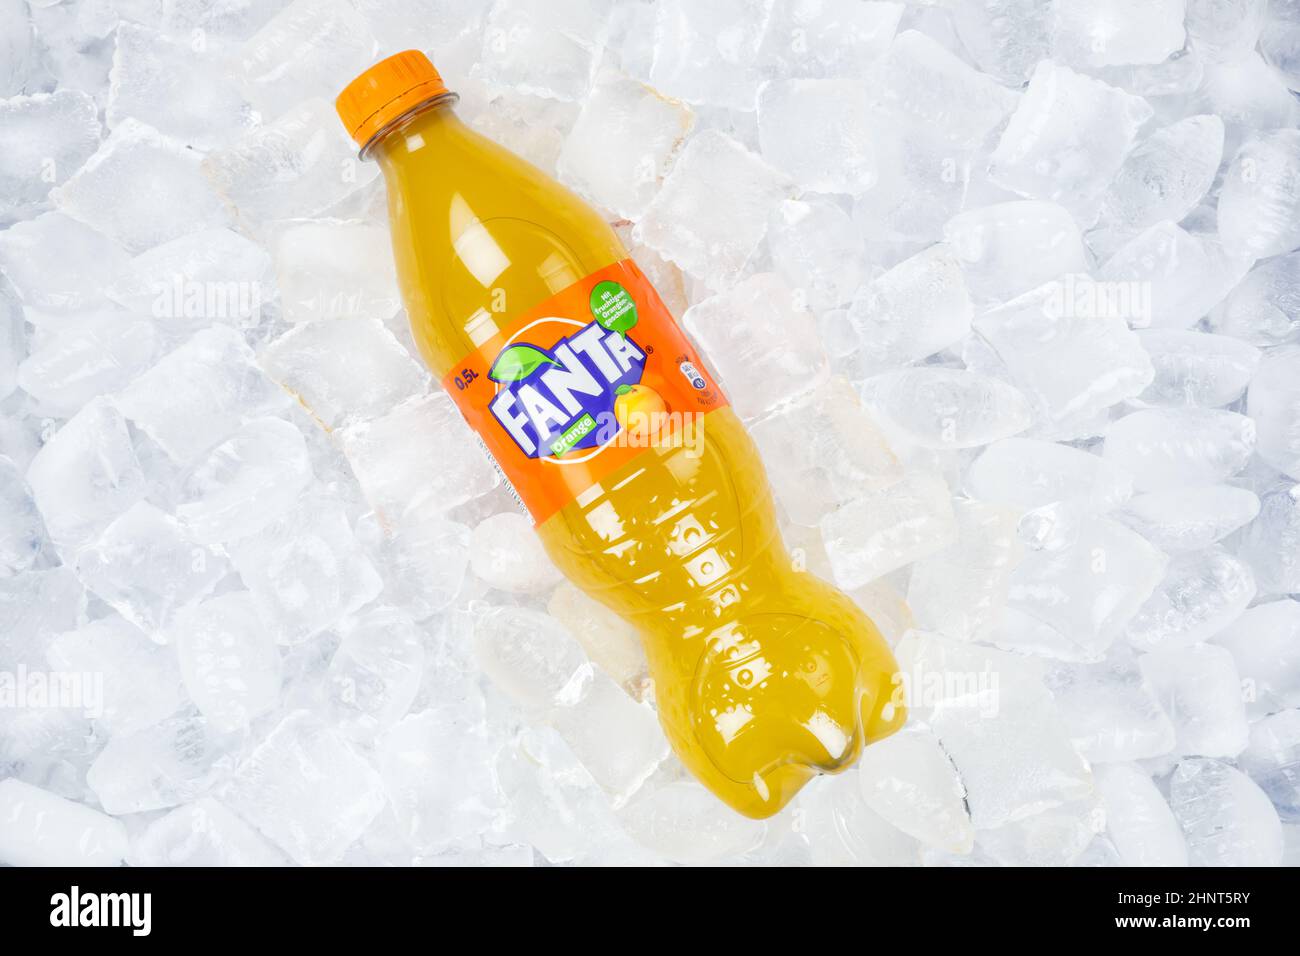 Limonata d'arancia Fanta bevanda analcolica in una bottiglia di plastica su cubetti di ghiaccio Foto Stock